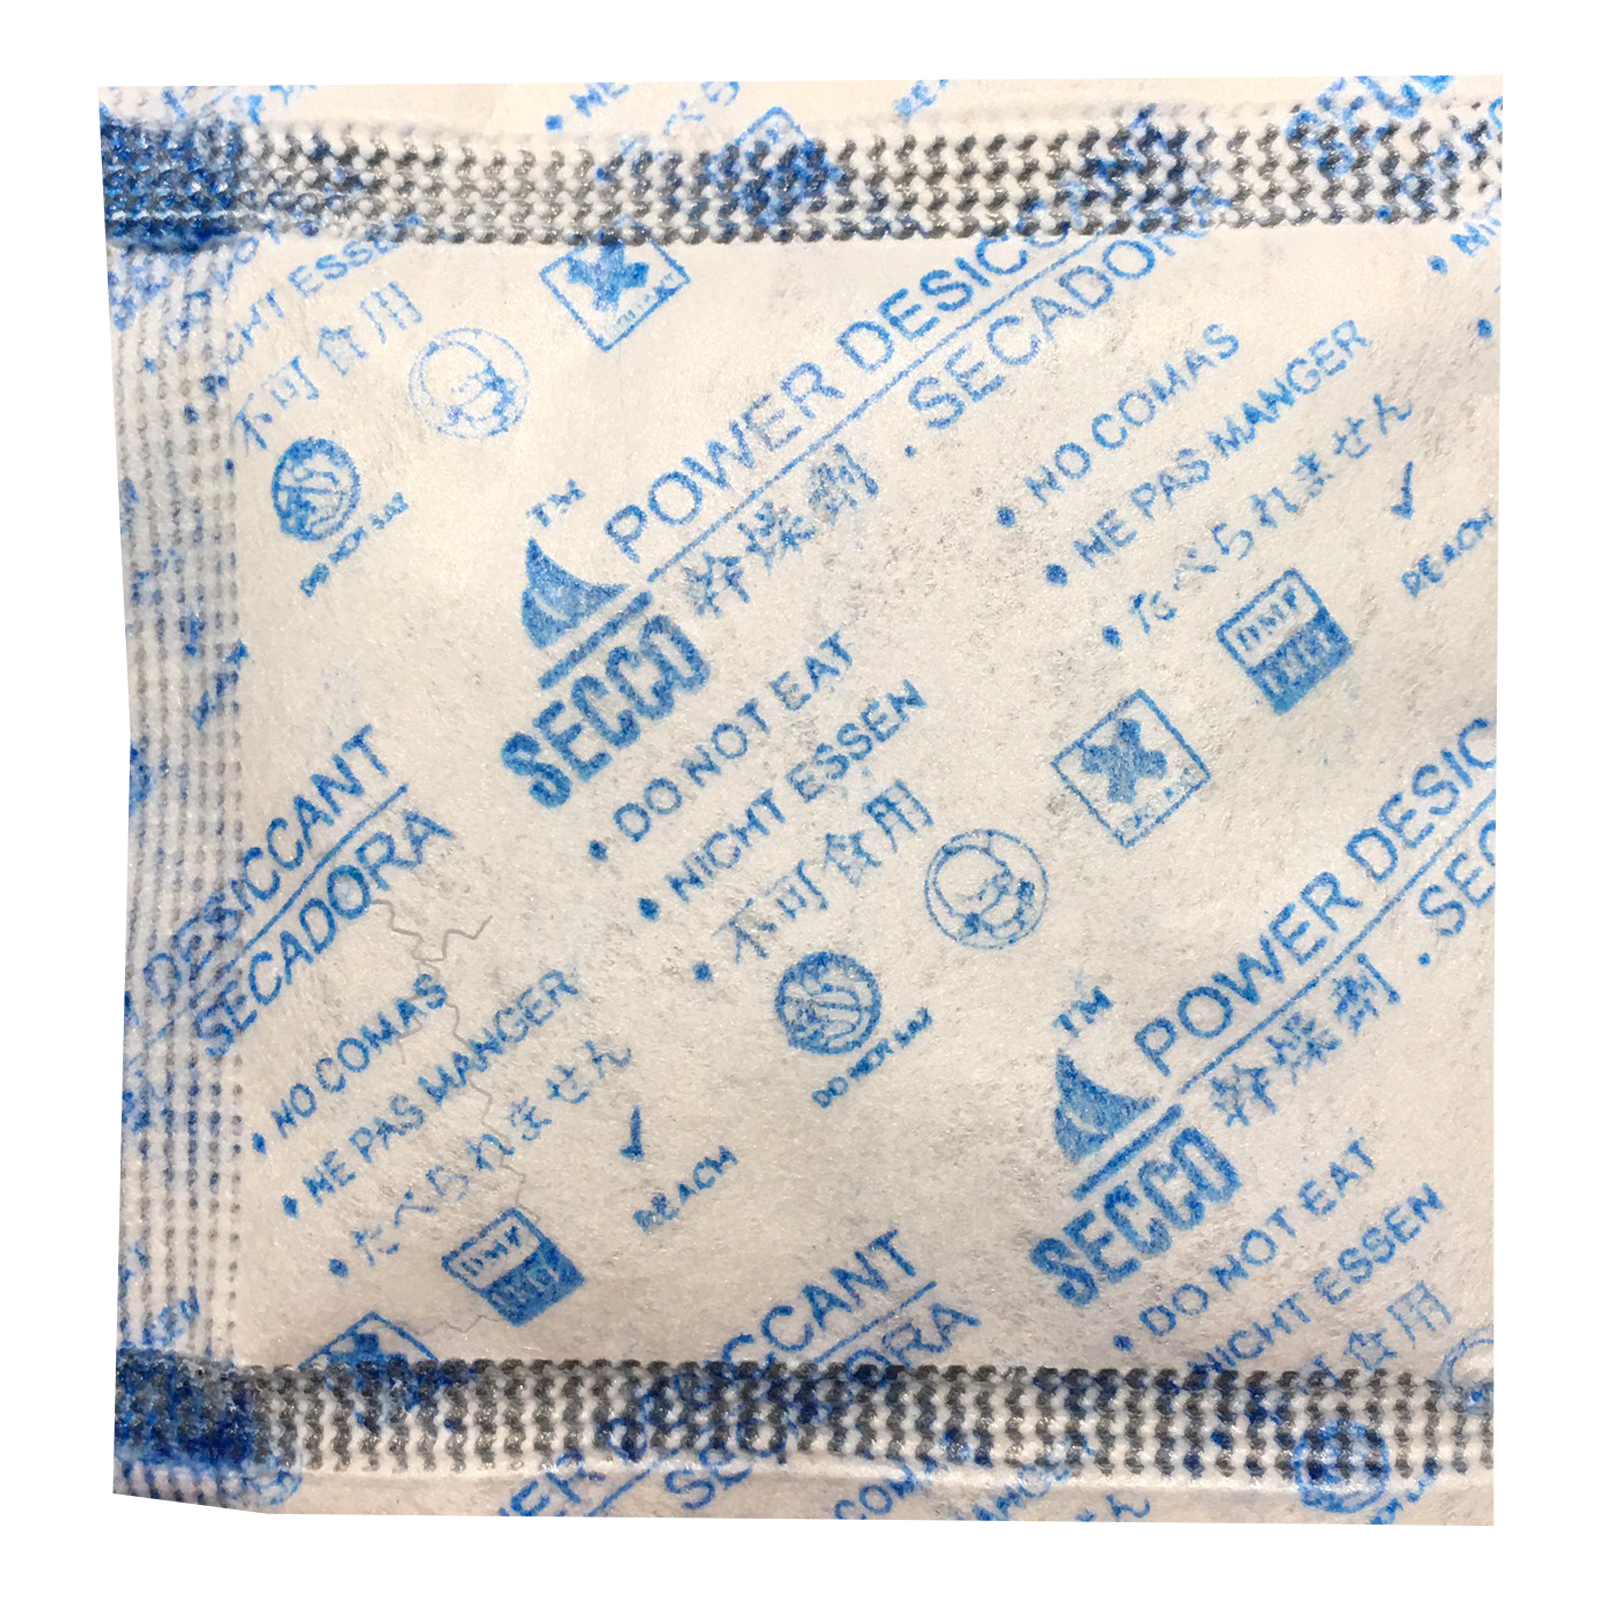 Túi hút ẩm Secco silica gel 3gr - 1kg (333 túi) - Chính hãng - Vải trắng - Chữ xanh logo